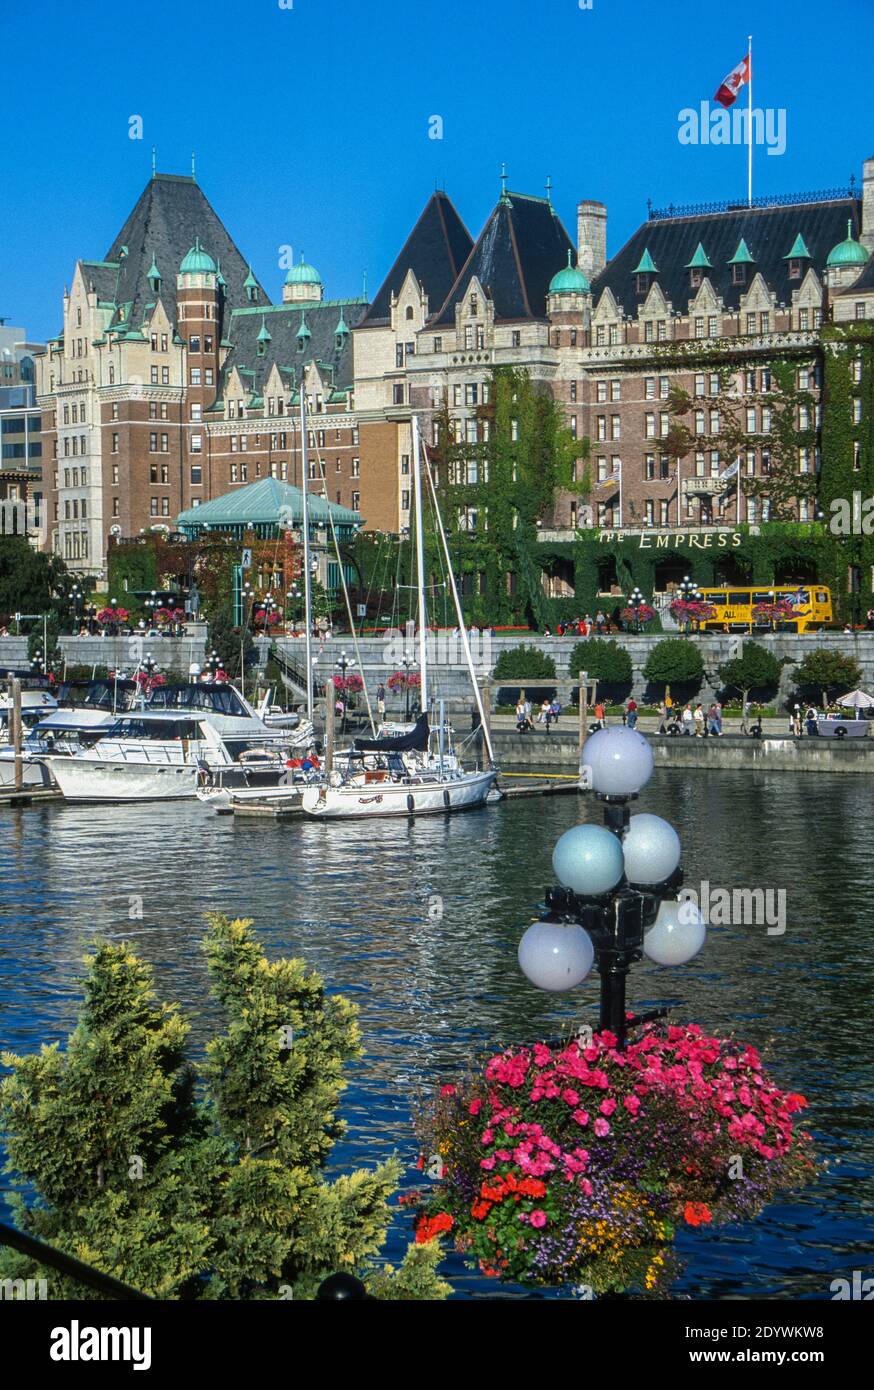 Victoria, Colombie-Britannique, Canada. Hôtel Empress avec petit port de bateau et panier de fleurs. Banque D'Images